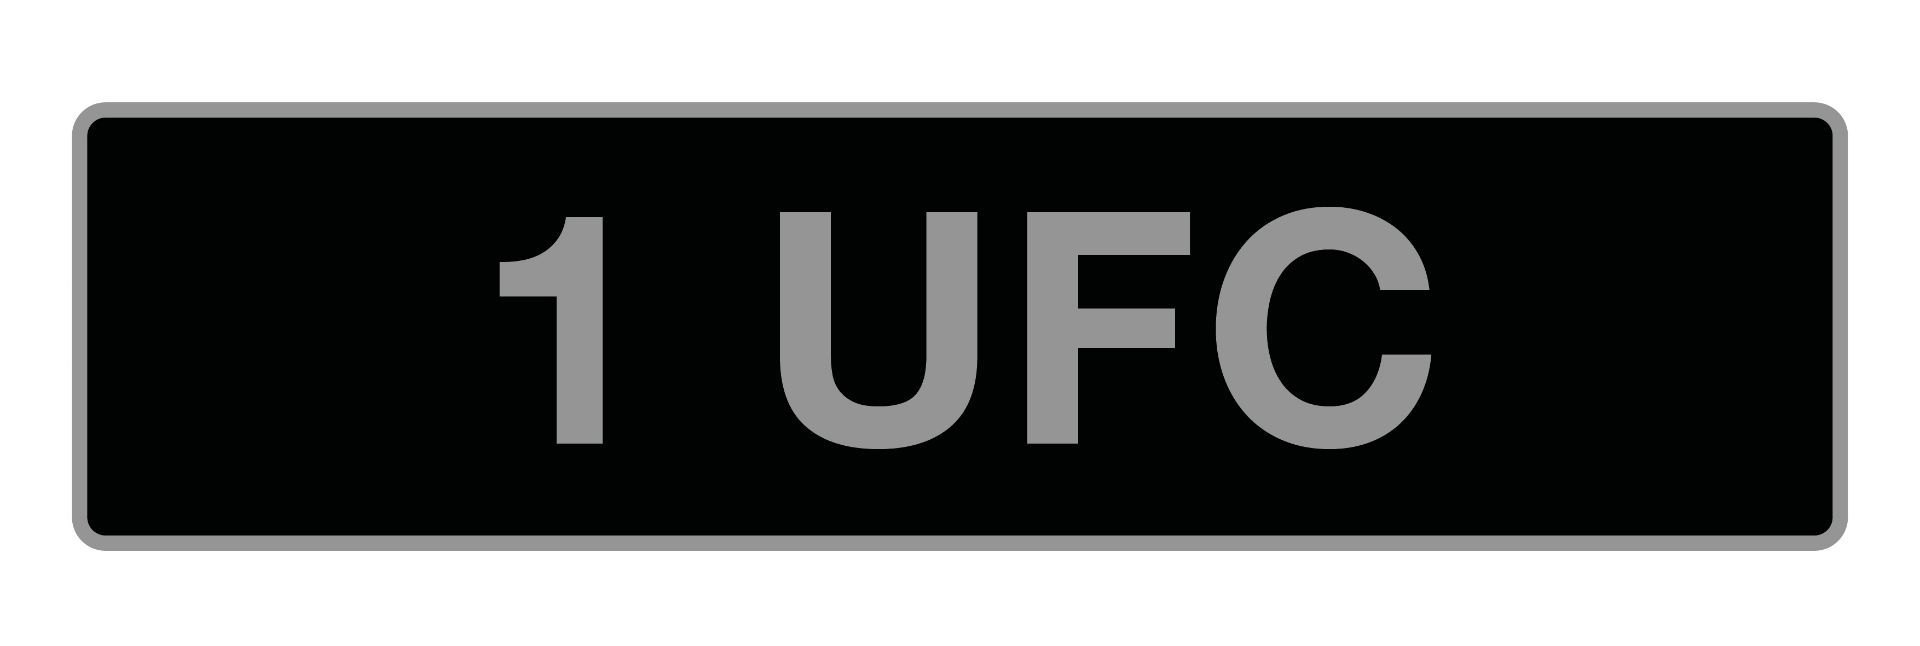 '1 UFC', UK Vehicle Registration Number,